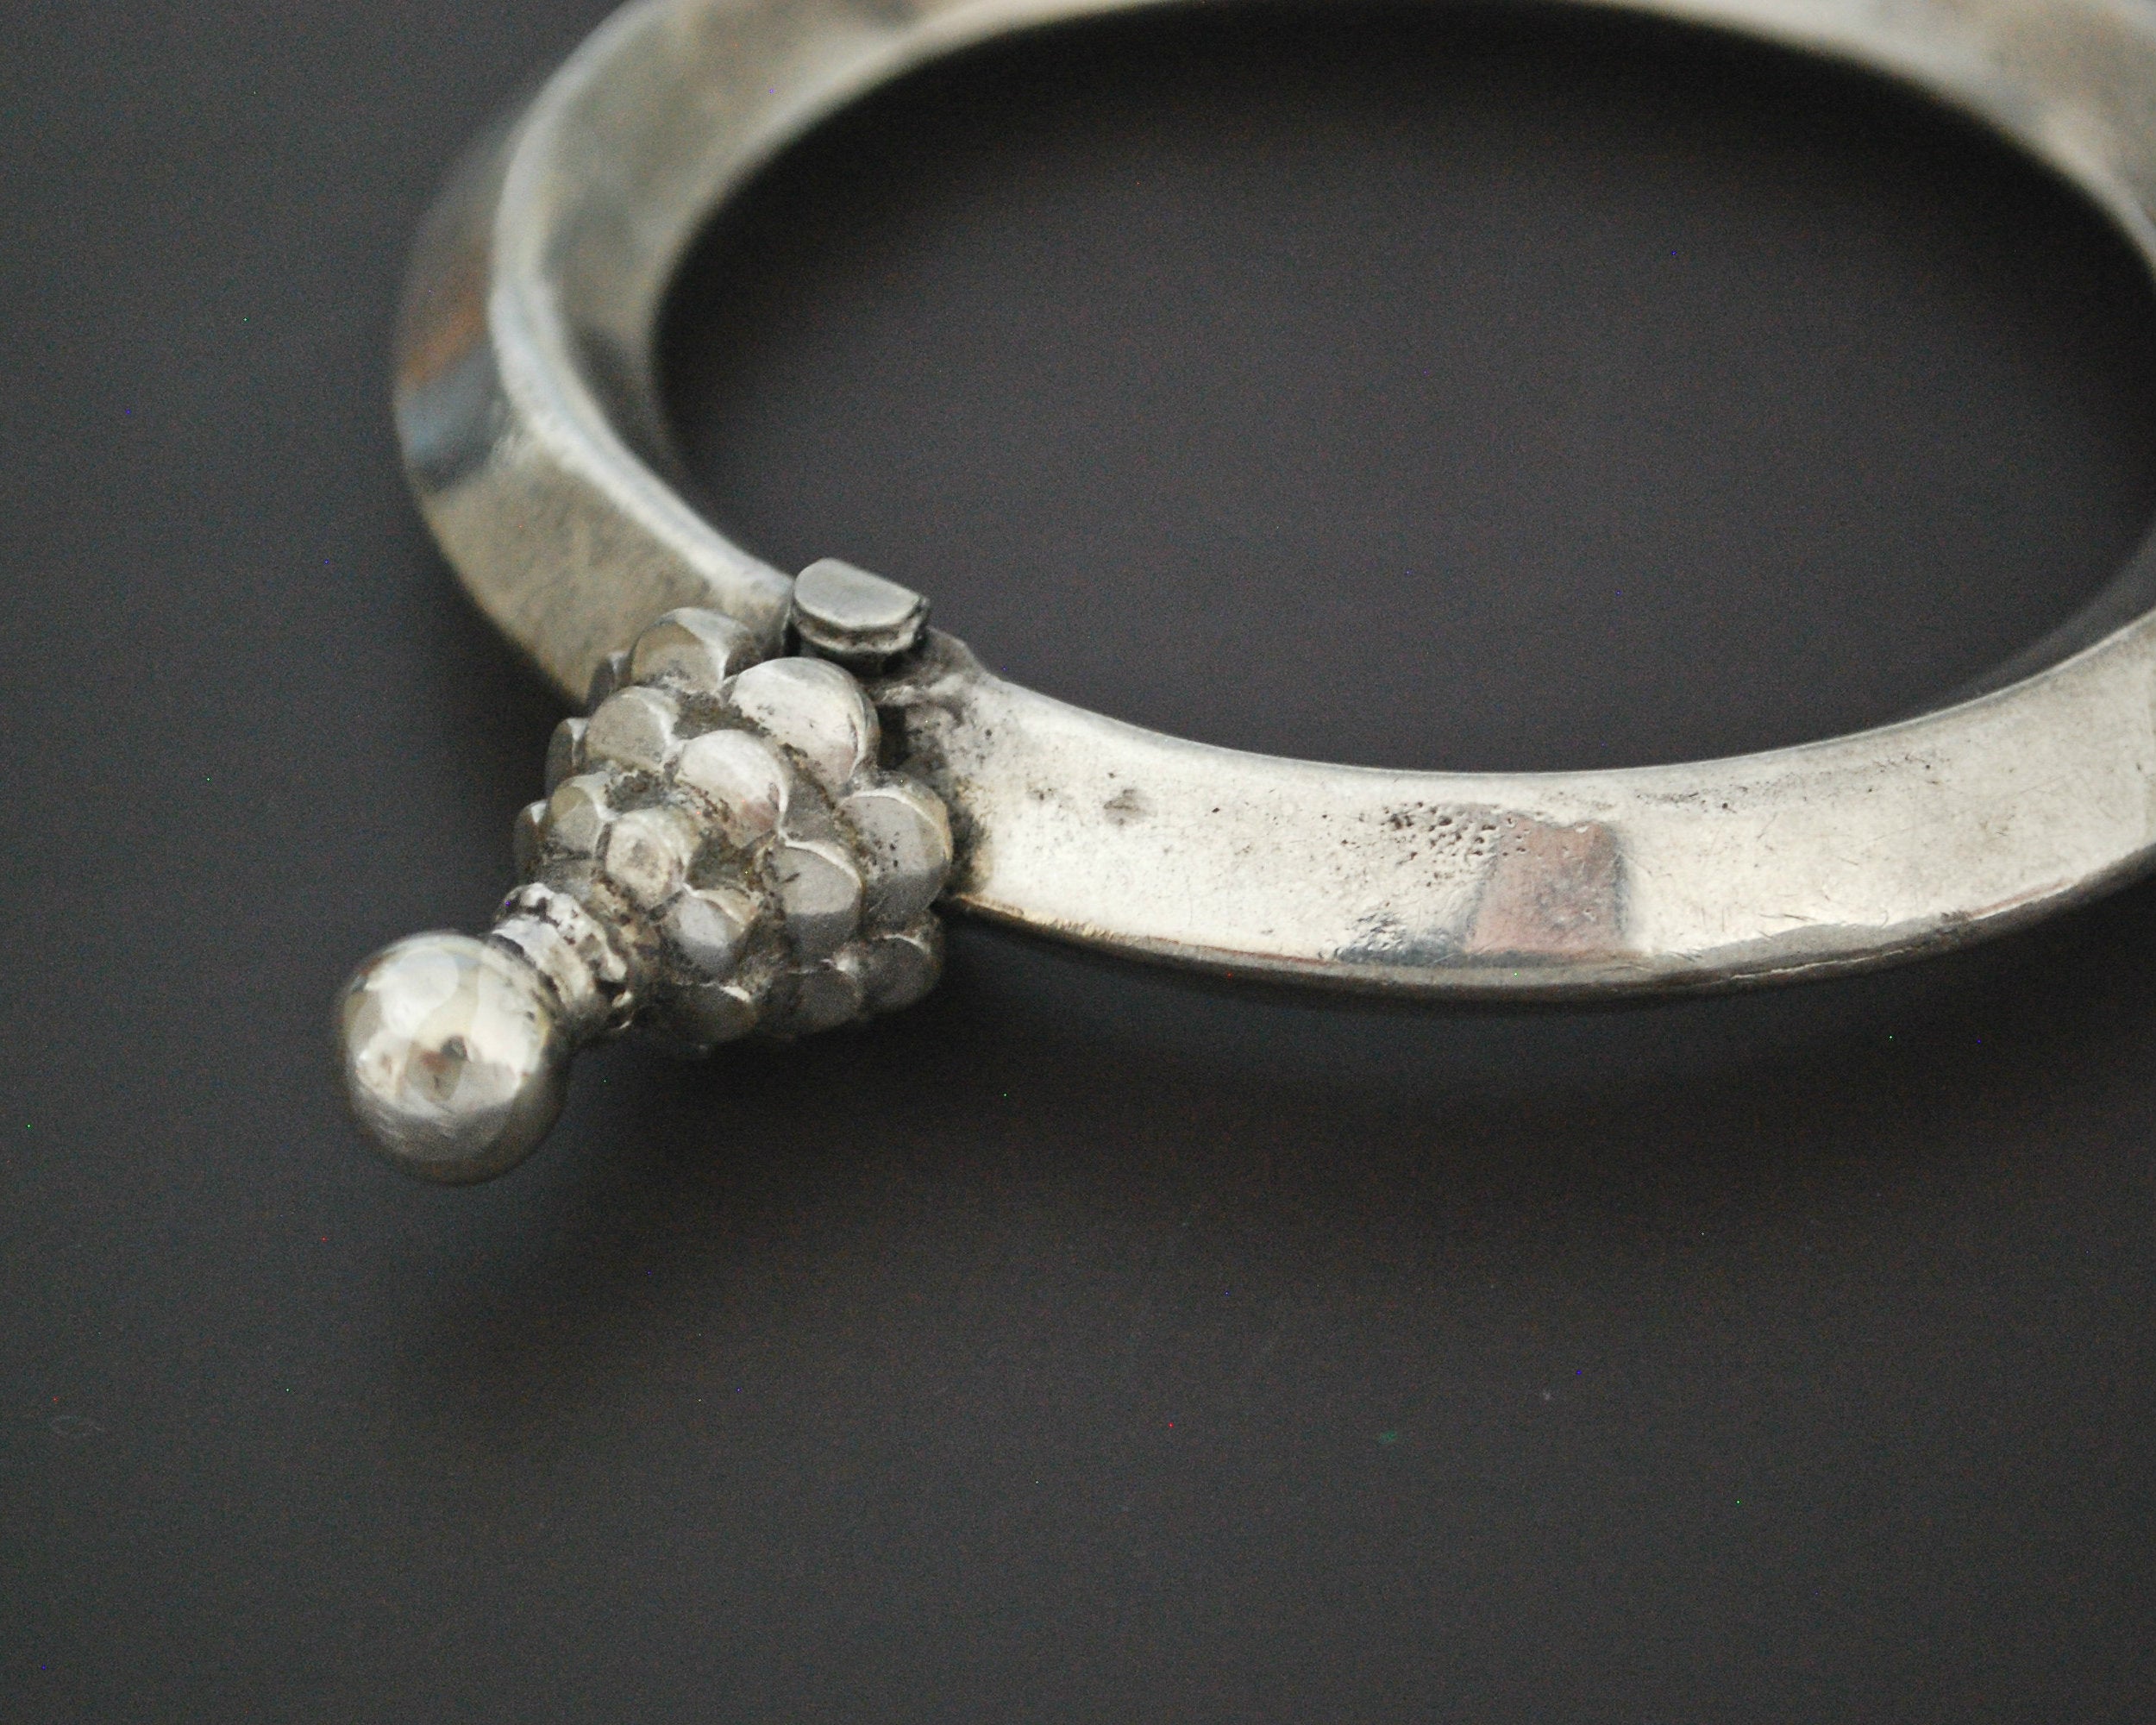 Old Rajasthani Silver Bracelet - LARGE